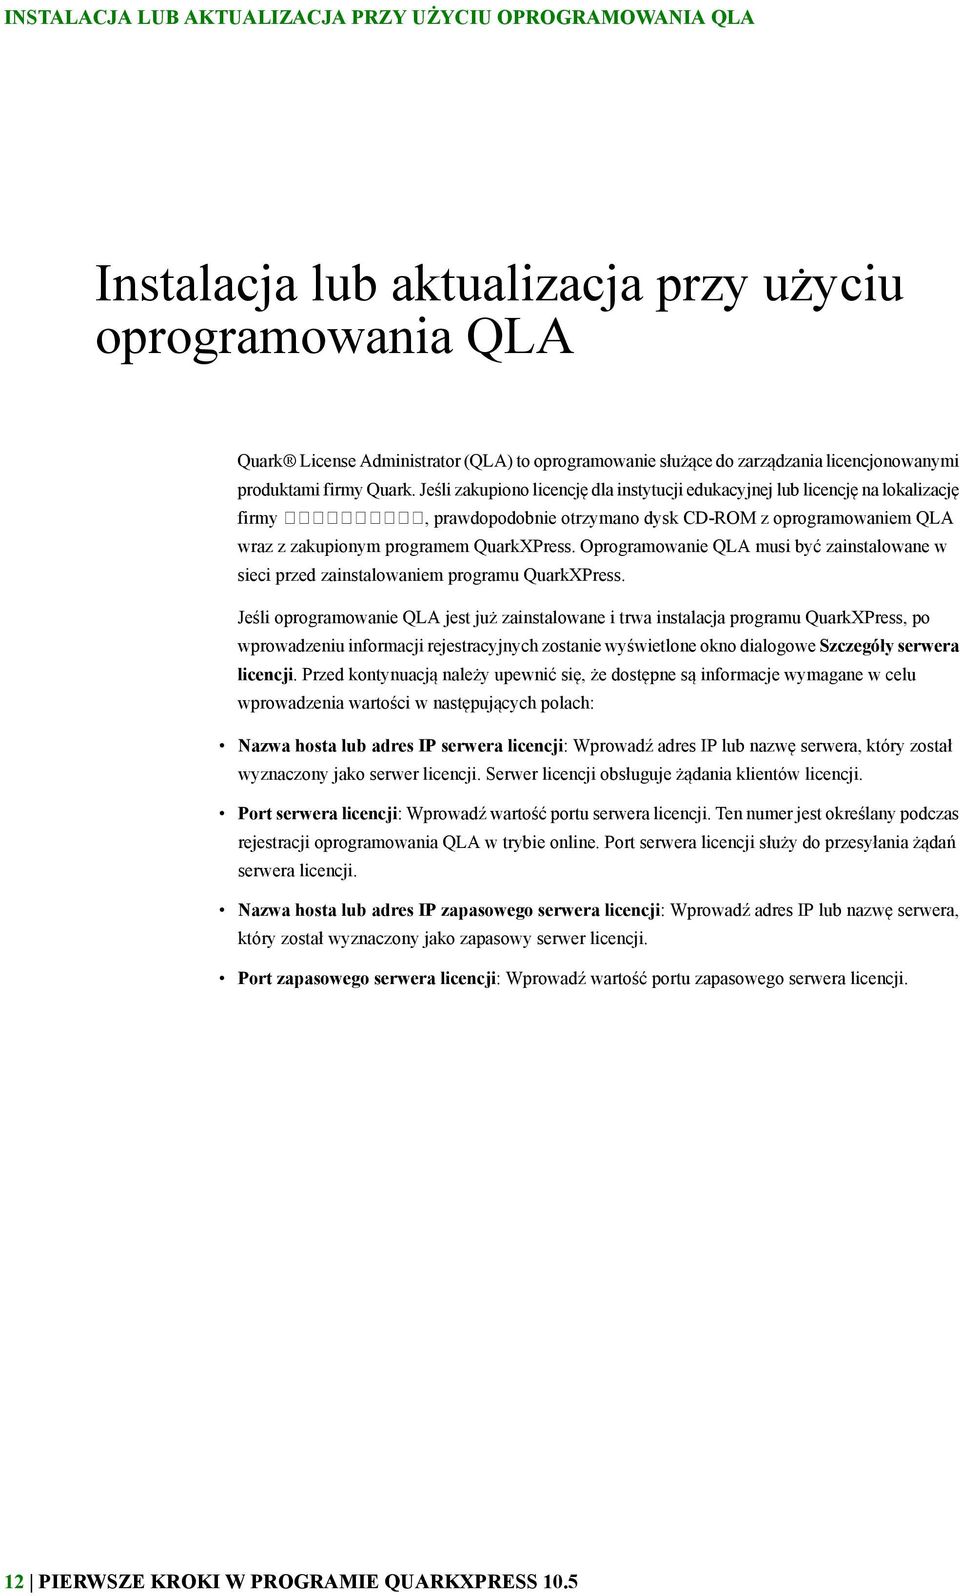 Jeśli zakupiono licencję dla instytucji edukacyjnej lub licencję na lokalizację firmy, prawdopodobnie otrzymano dysk CD-ROM z oprogramowaniem QLA wraz z zakupionym programem QuarkXPress.